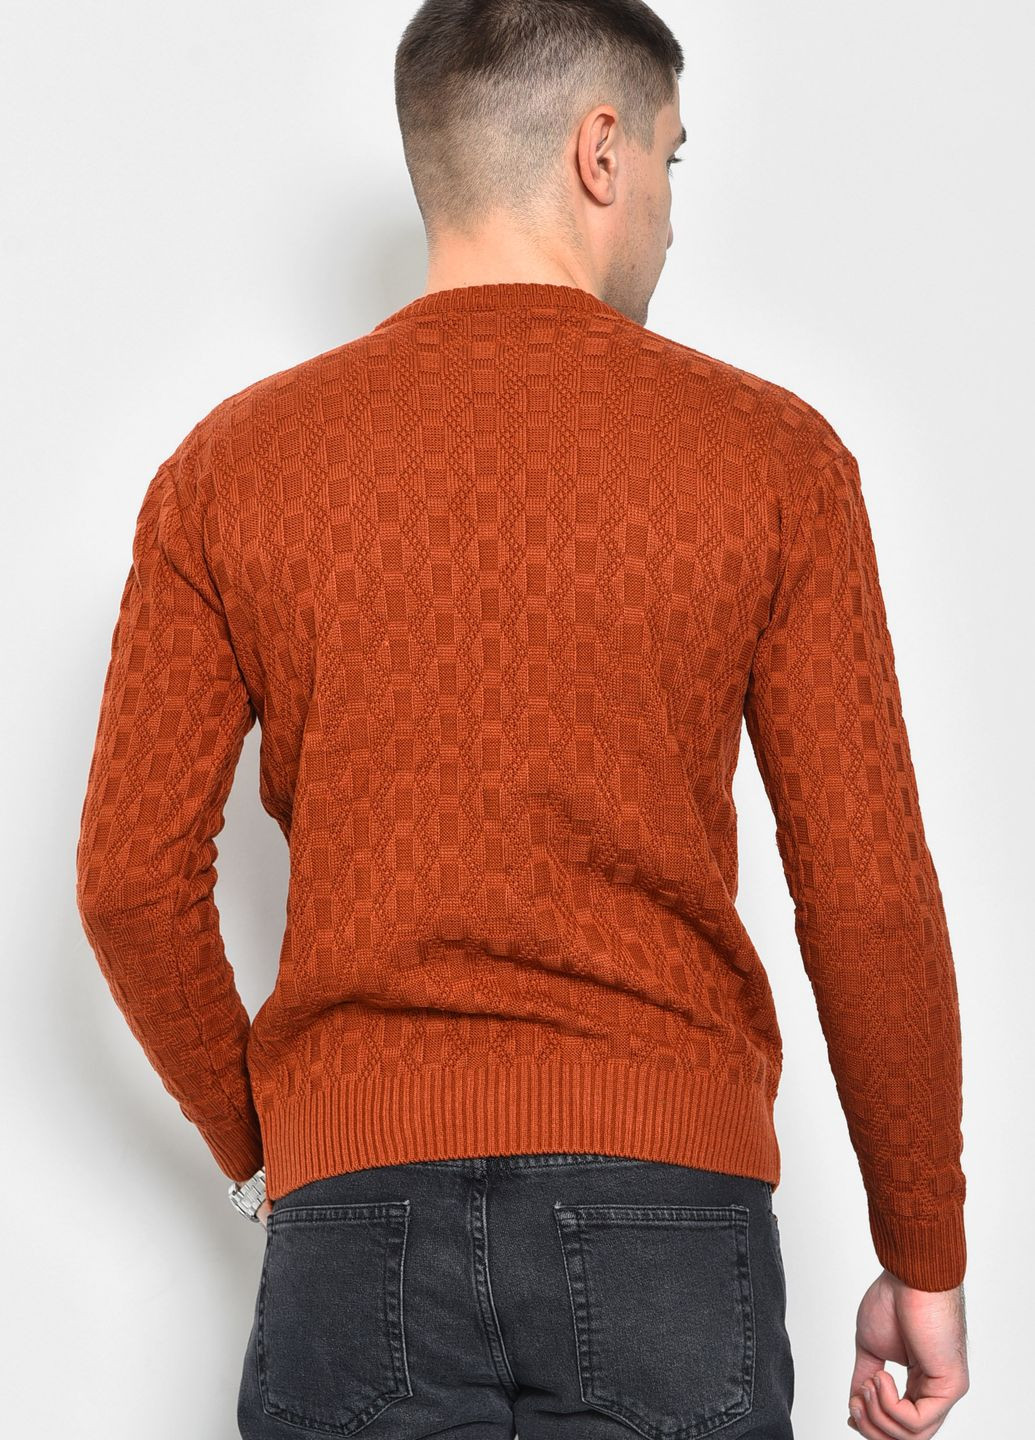 Терракотовый демисезонный свитер мужской однотонный терракотового цвета пуловер Let's Shop